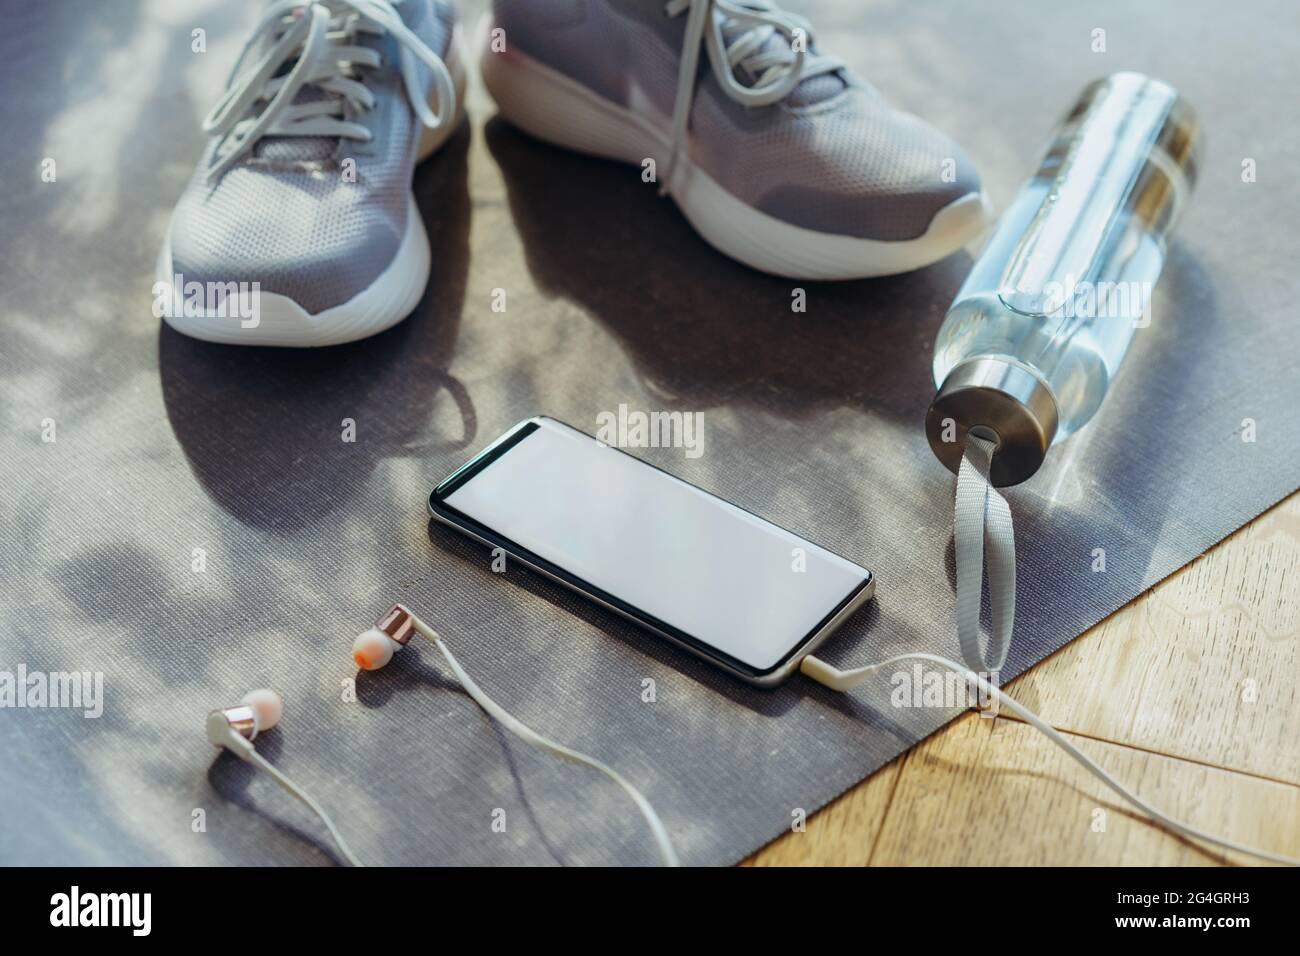 Écran vide pour smartphone avec écouteurs, bouteille d'eau et baskets à l'arrière-plan. Pour la course à pied et les activités sportives . Sain et actif Banque D'Images